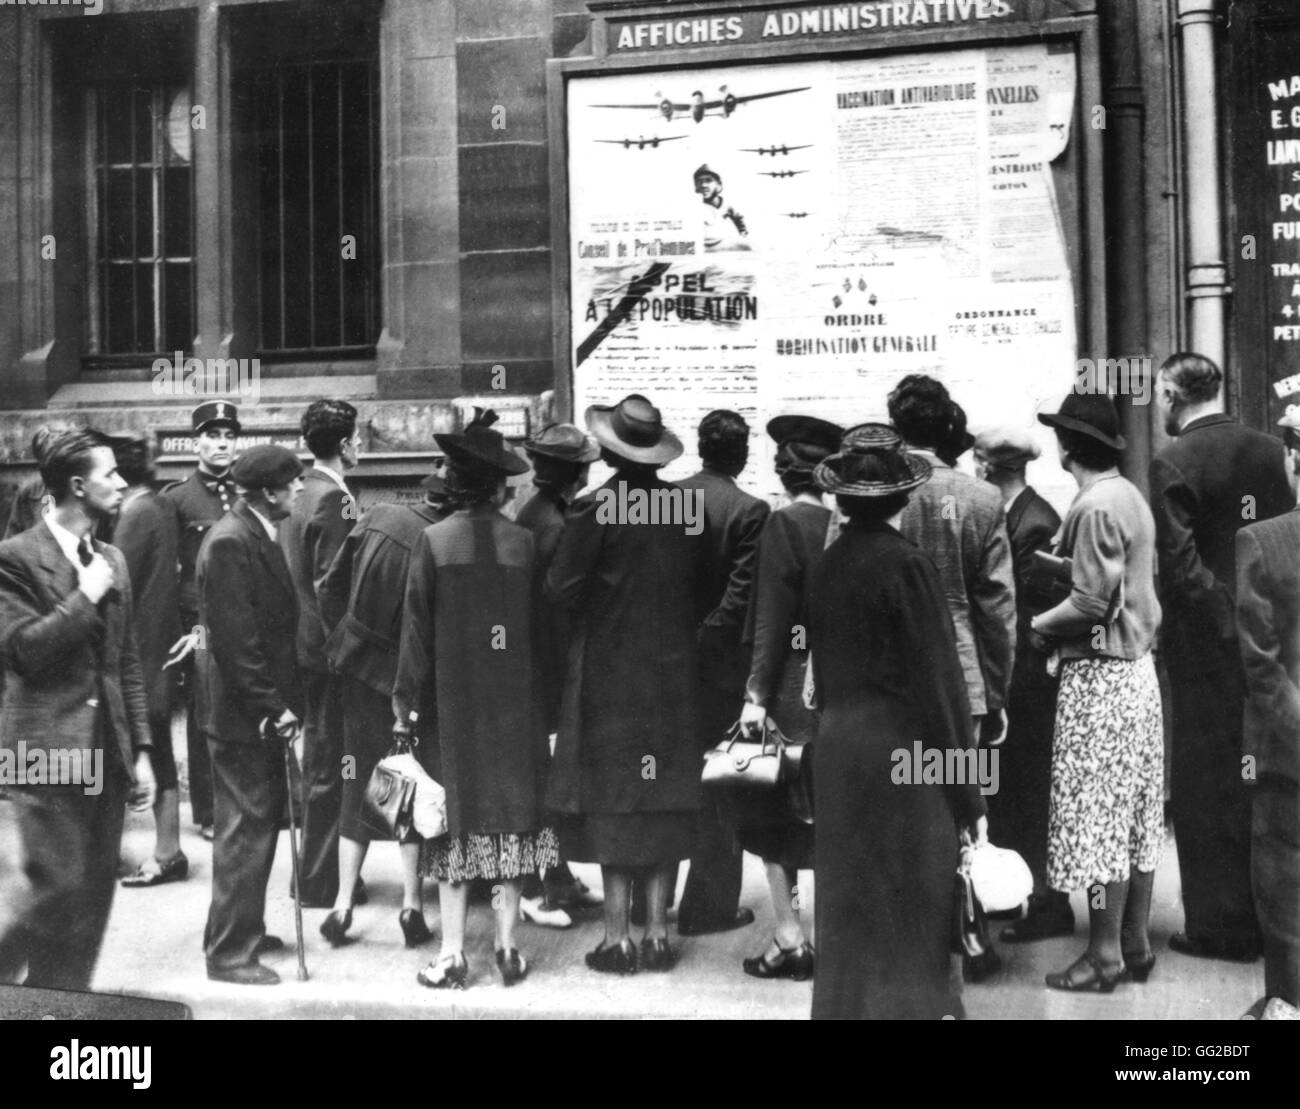 Los civiles en busca de movilización carteles 9-1-1939 Francia - Segunda Guerra Mundial Foto de stock